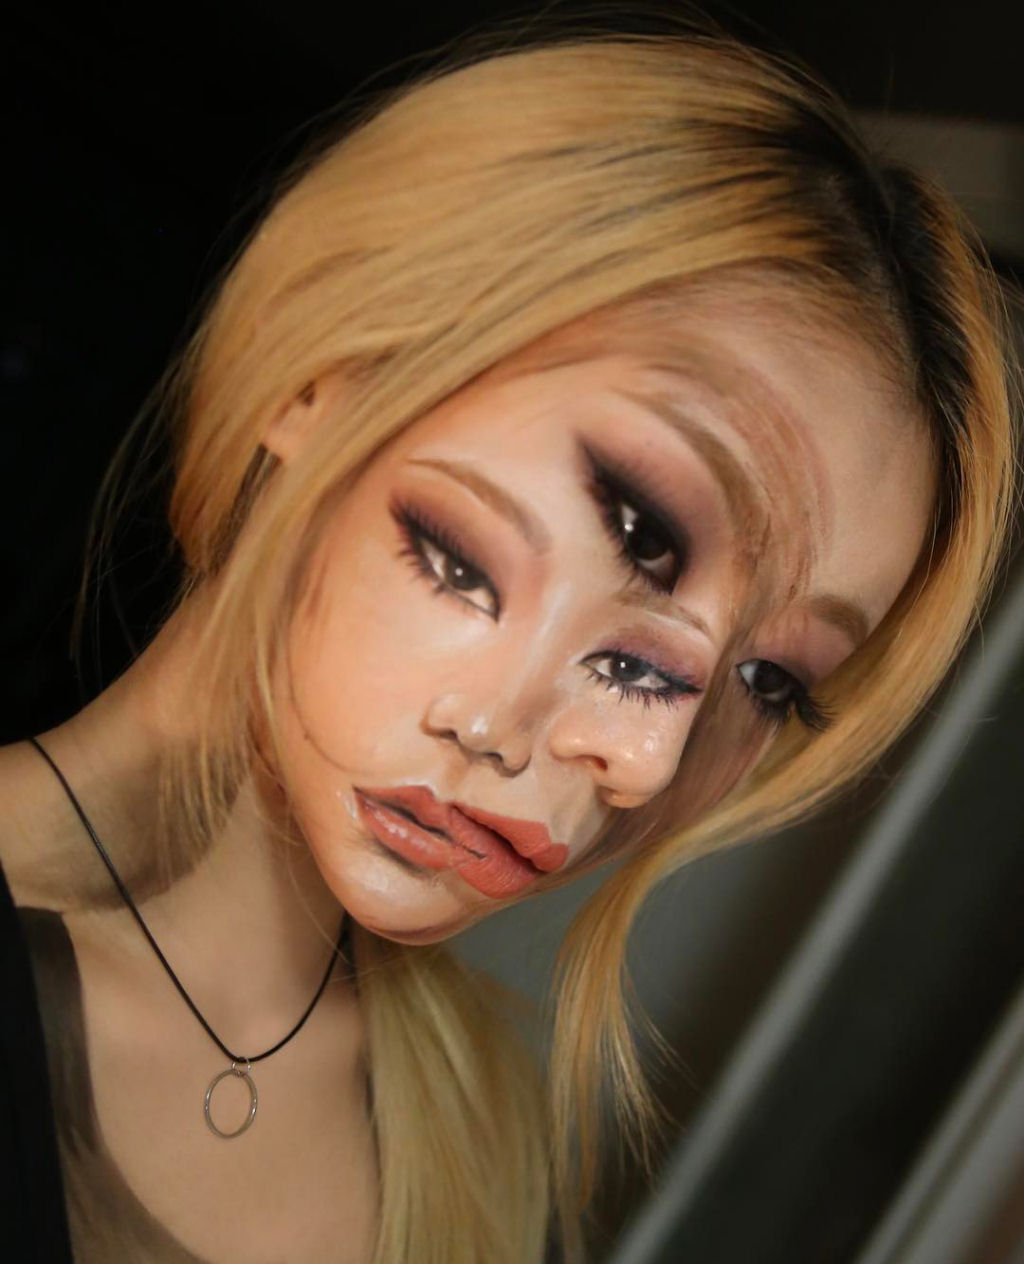 Artista sul-coreana usa maquiagem para transformar sua face em iluses pticas fascinantes 05